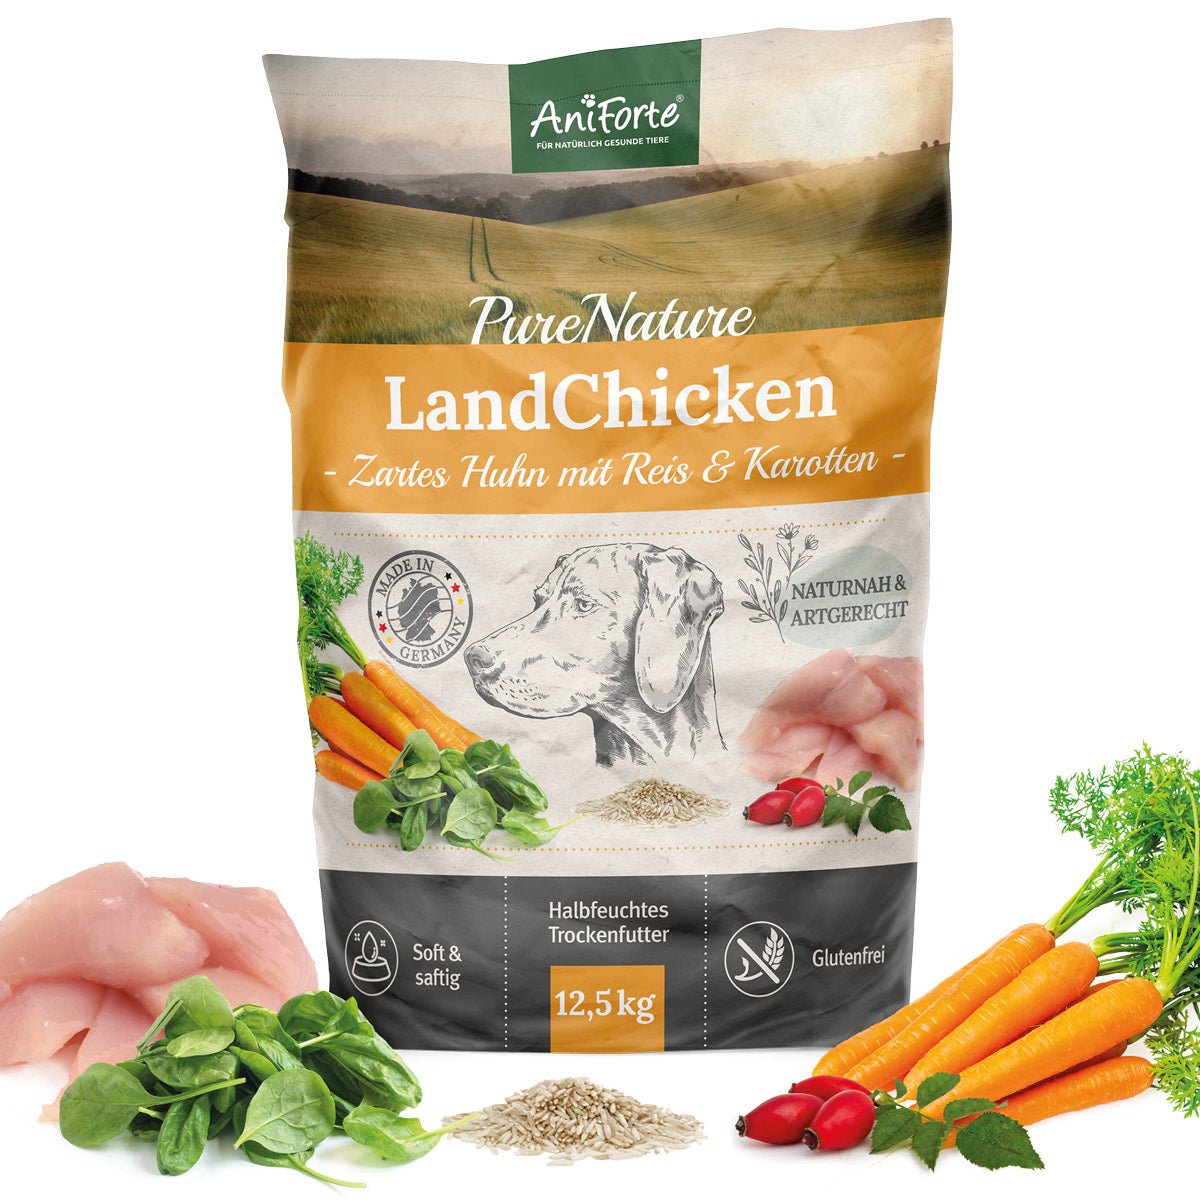 Trockenfutter LandChicken – Zartes Huhn mit Reis von AniForte